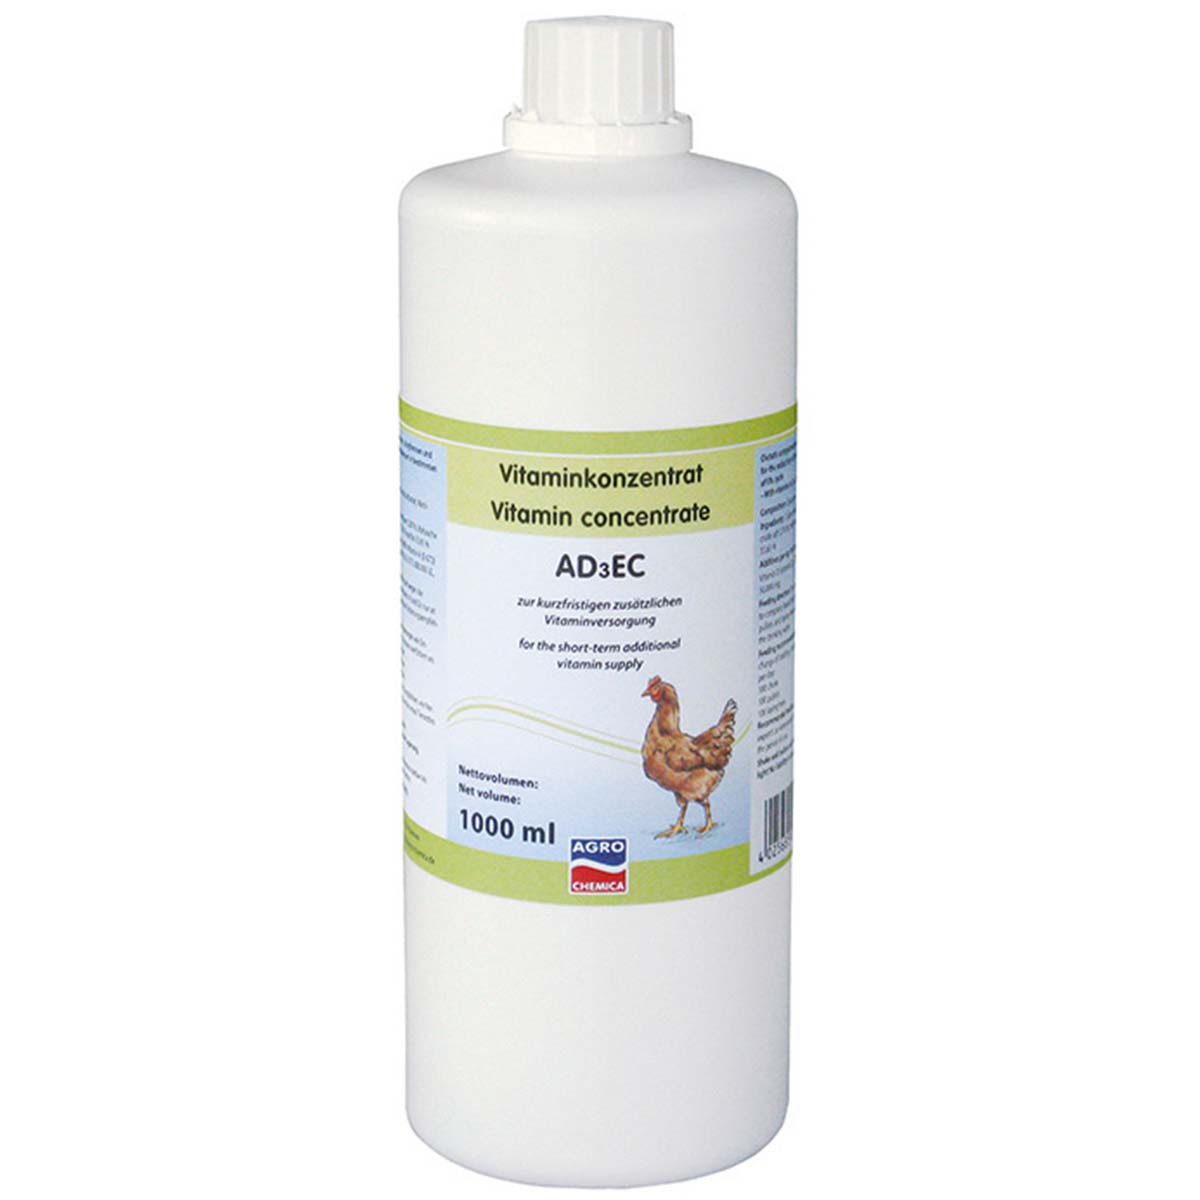 Concentrat de vitamine AD3EC pentru păsări 1000 ml